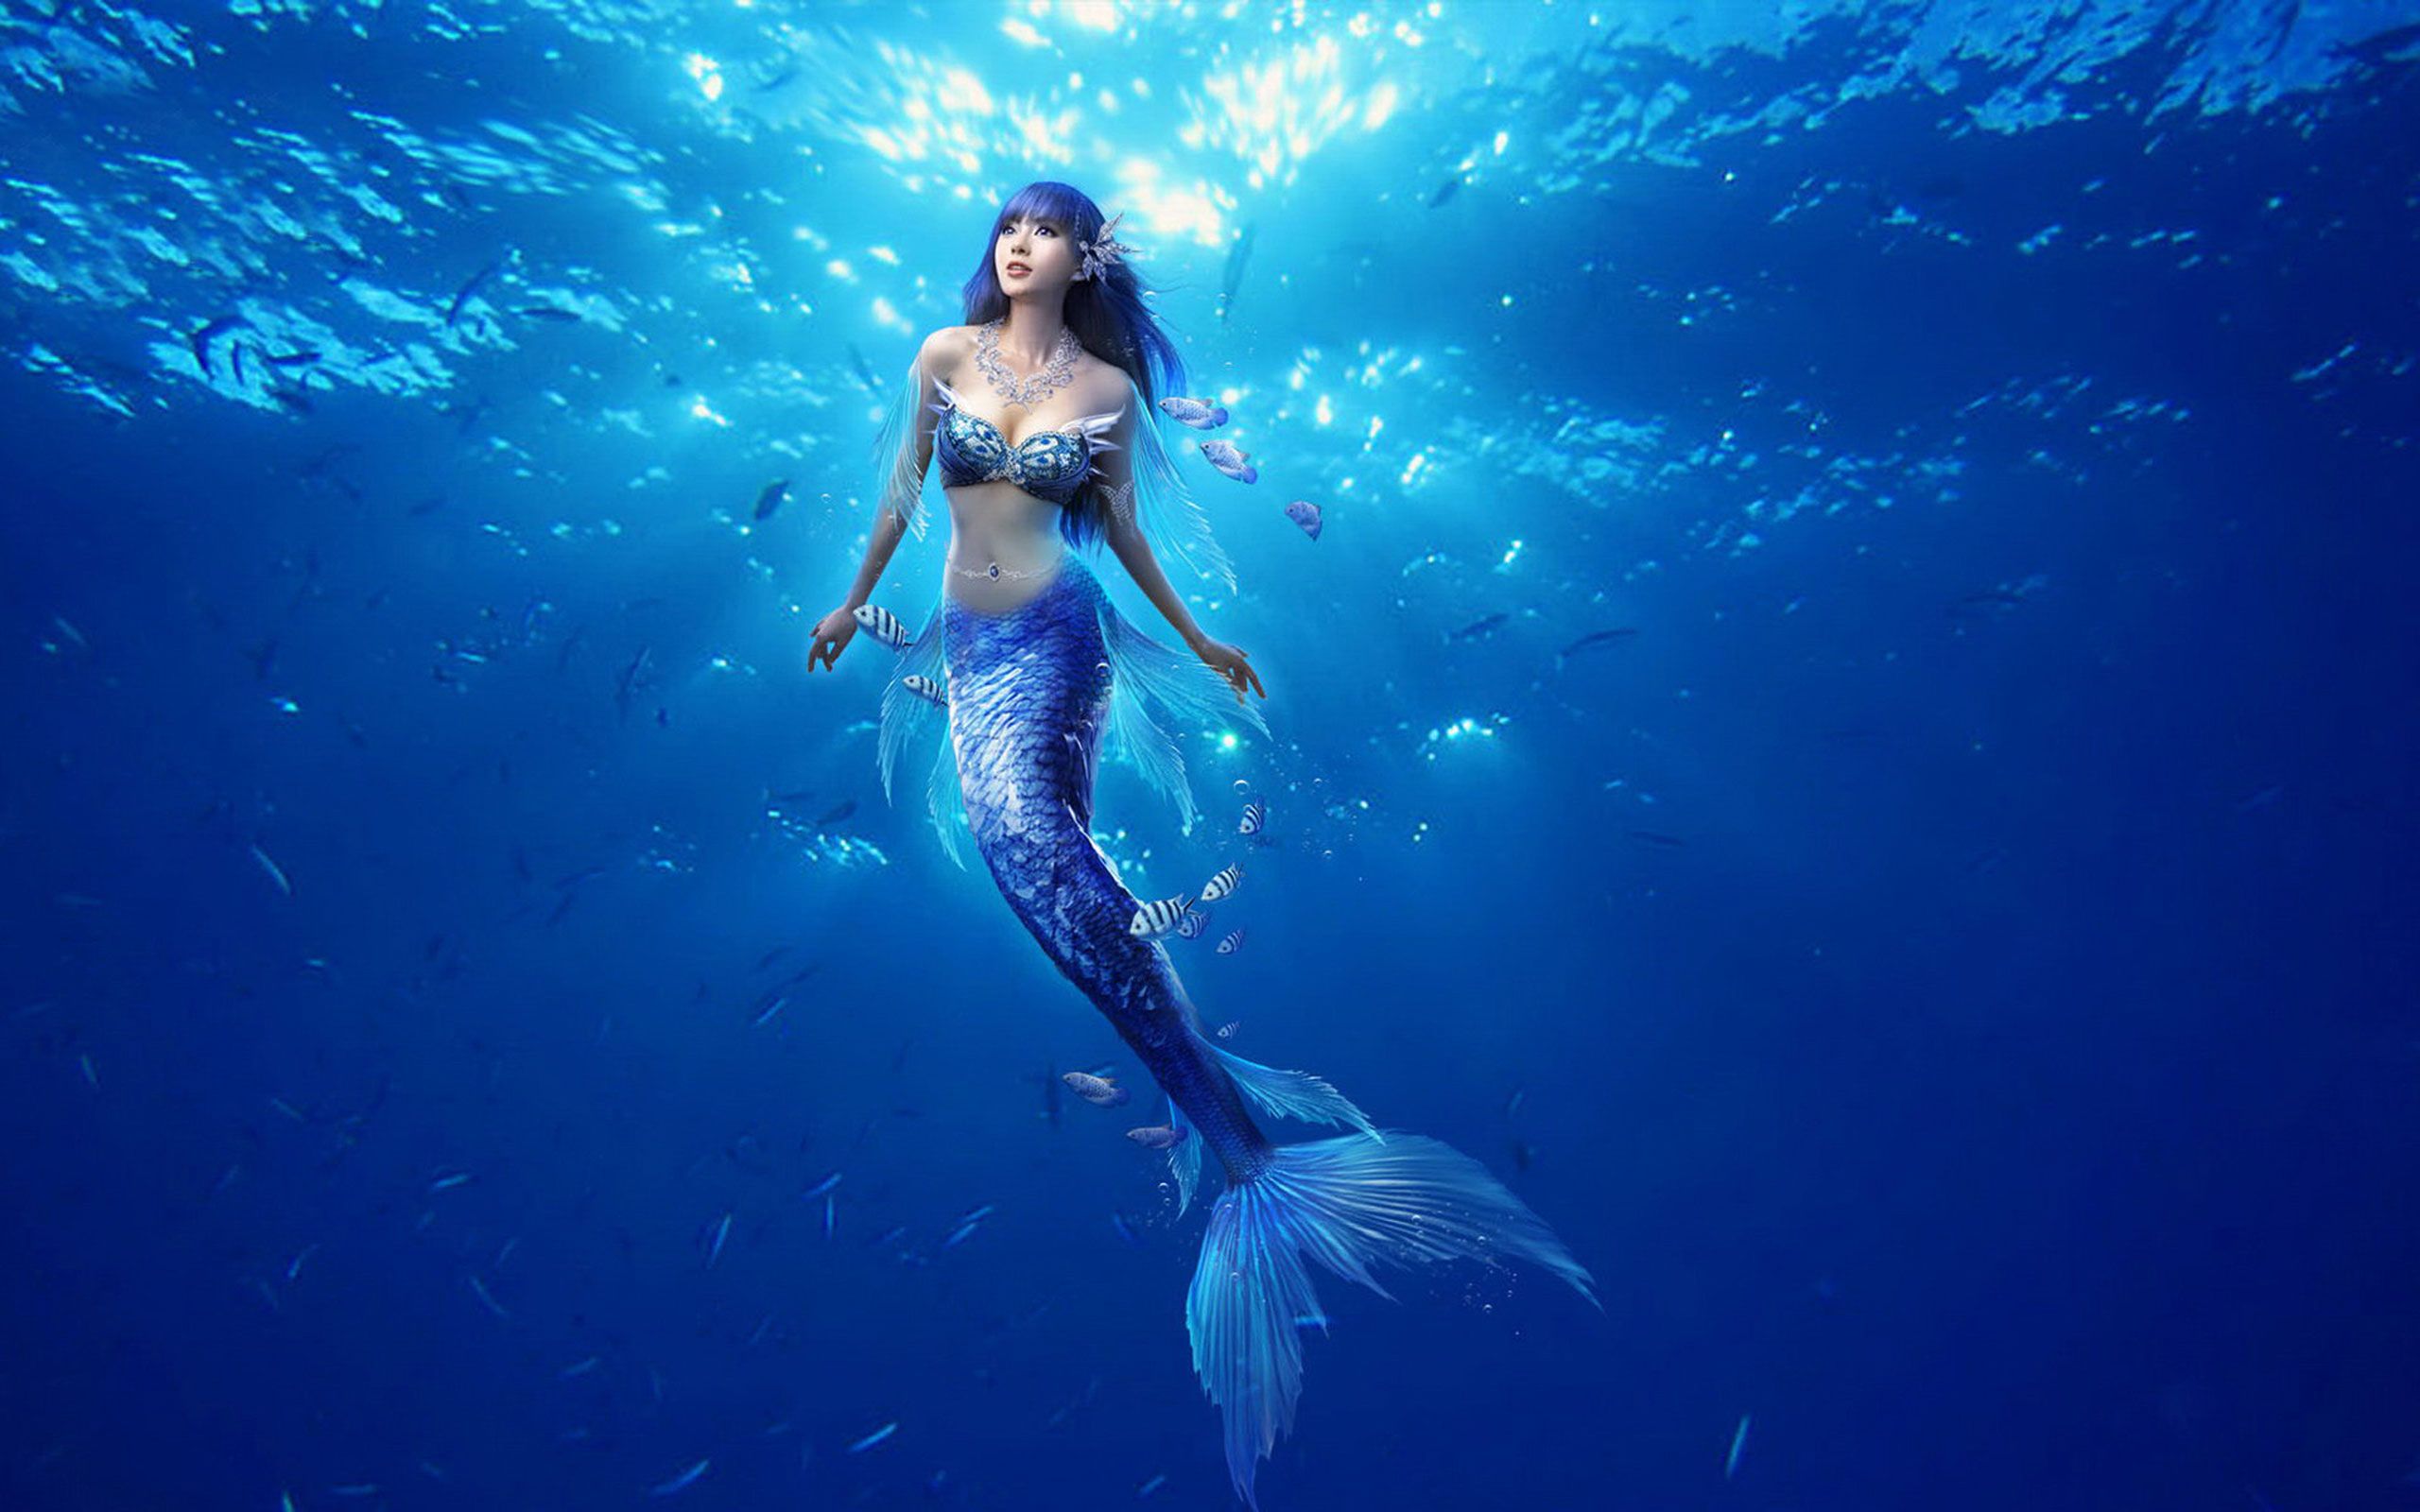 Mermaid Desktop Wallpaper, High Definition, High Quality, Widescreen